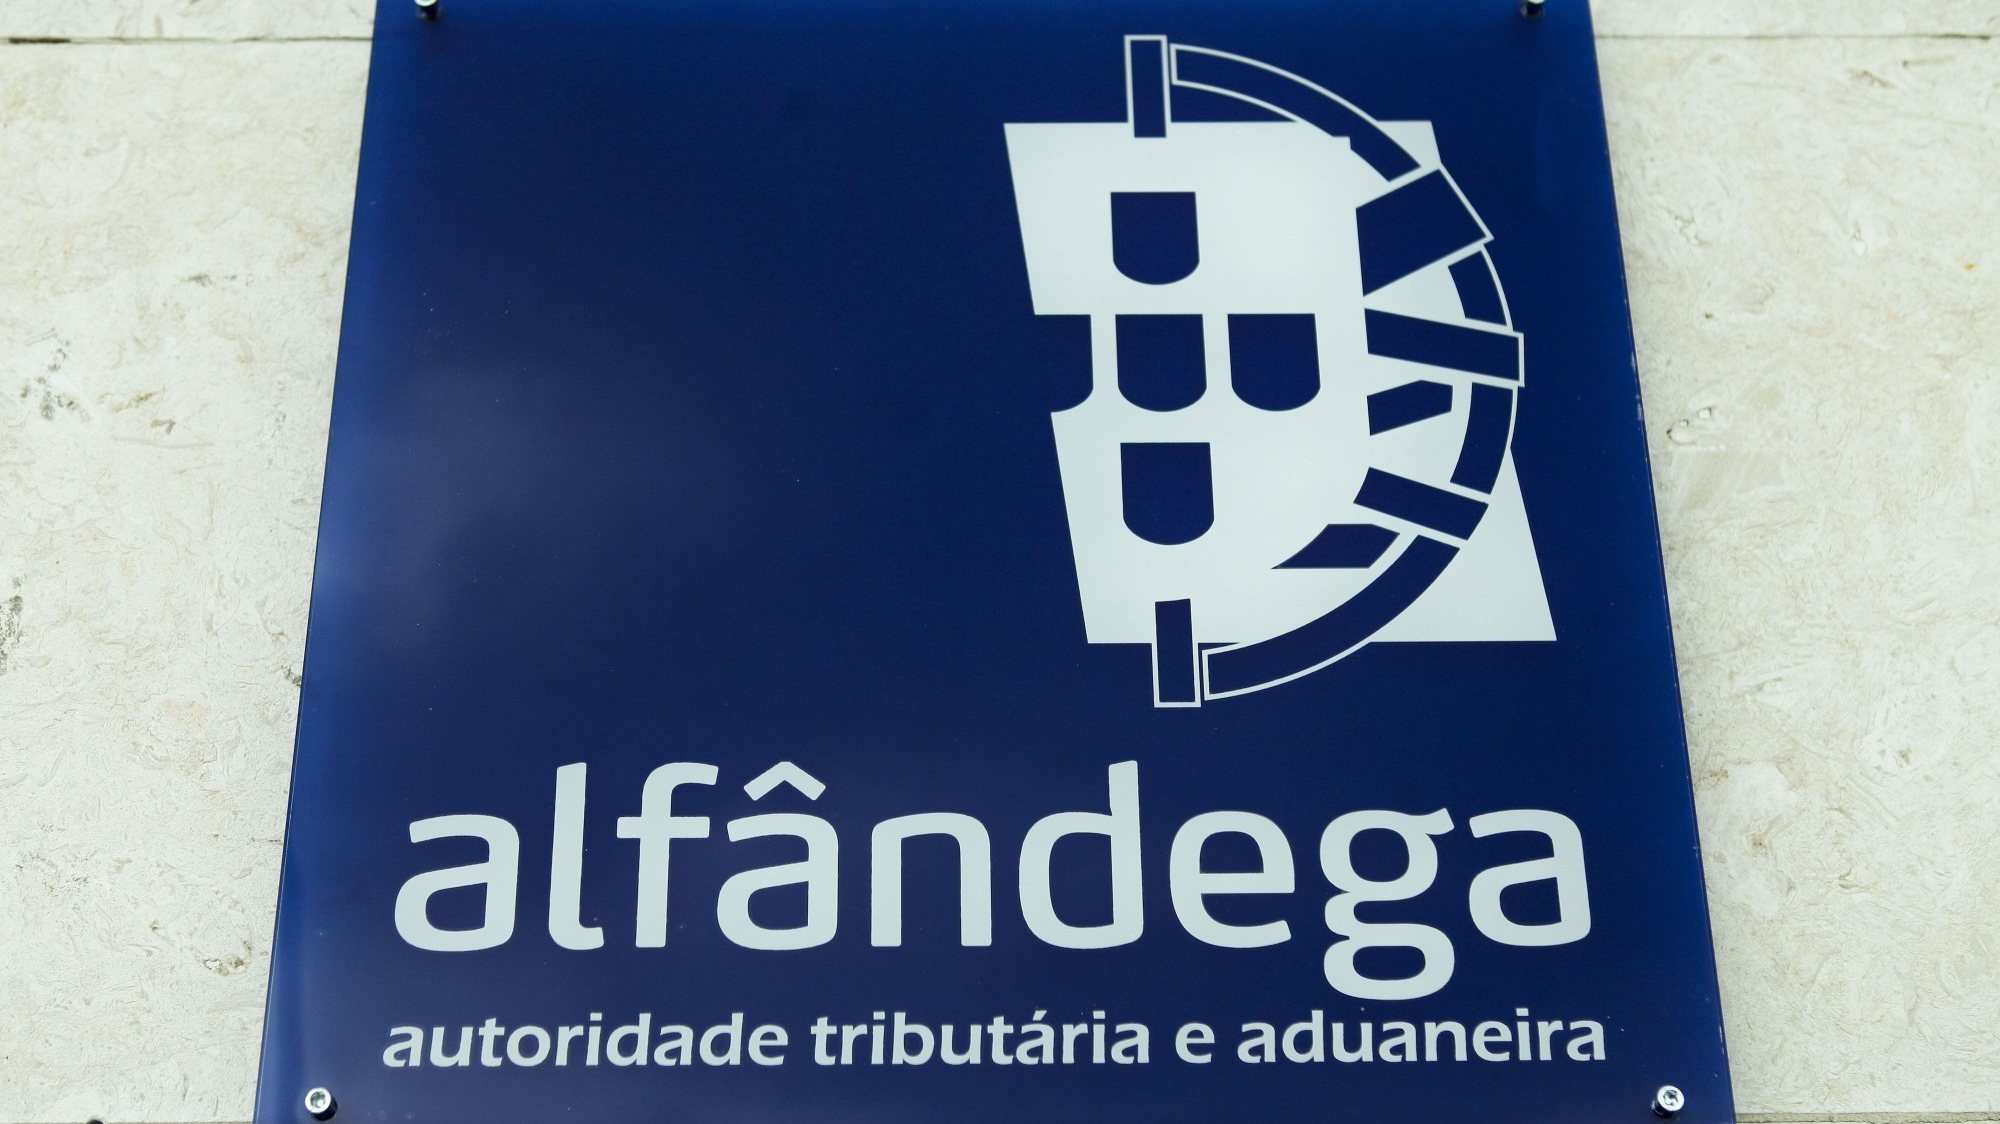 laca identificativa da Alfândega, autoridade tributária e aduaneira em Lisboa